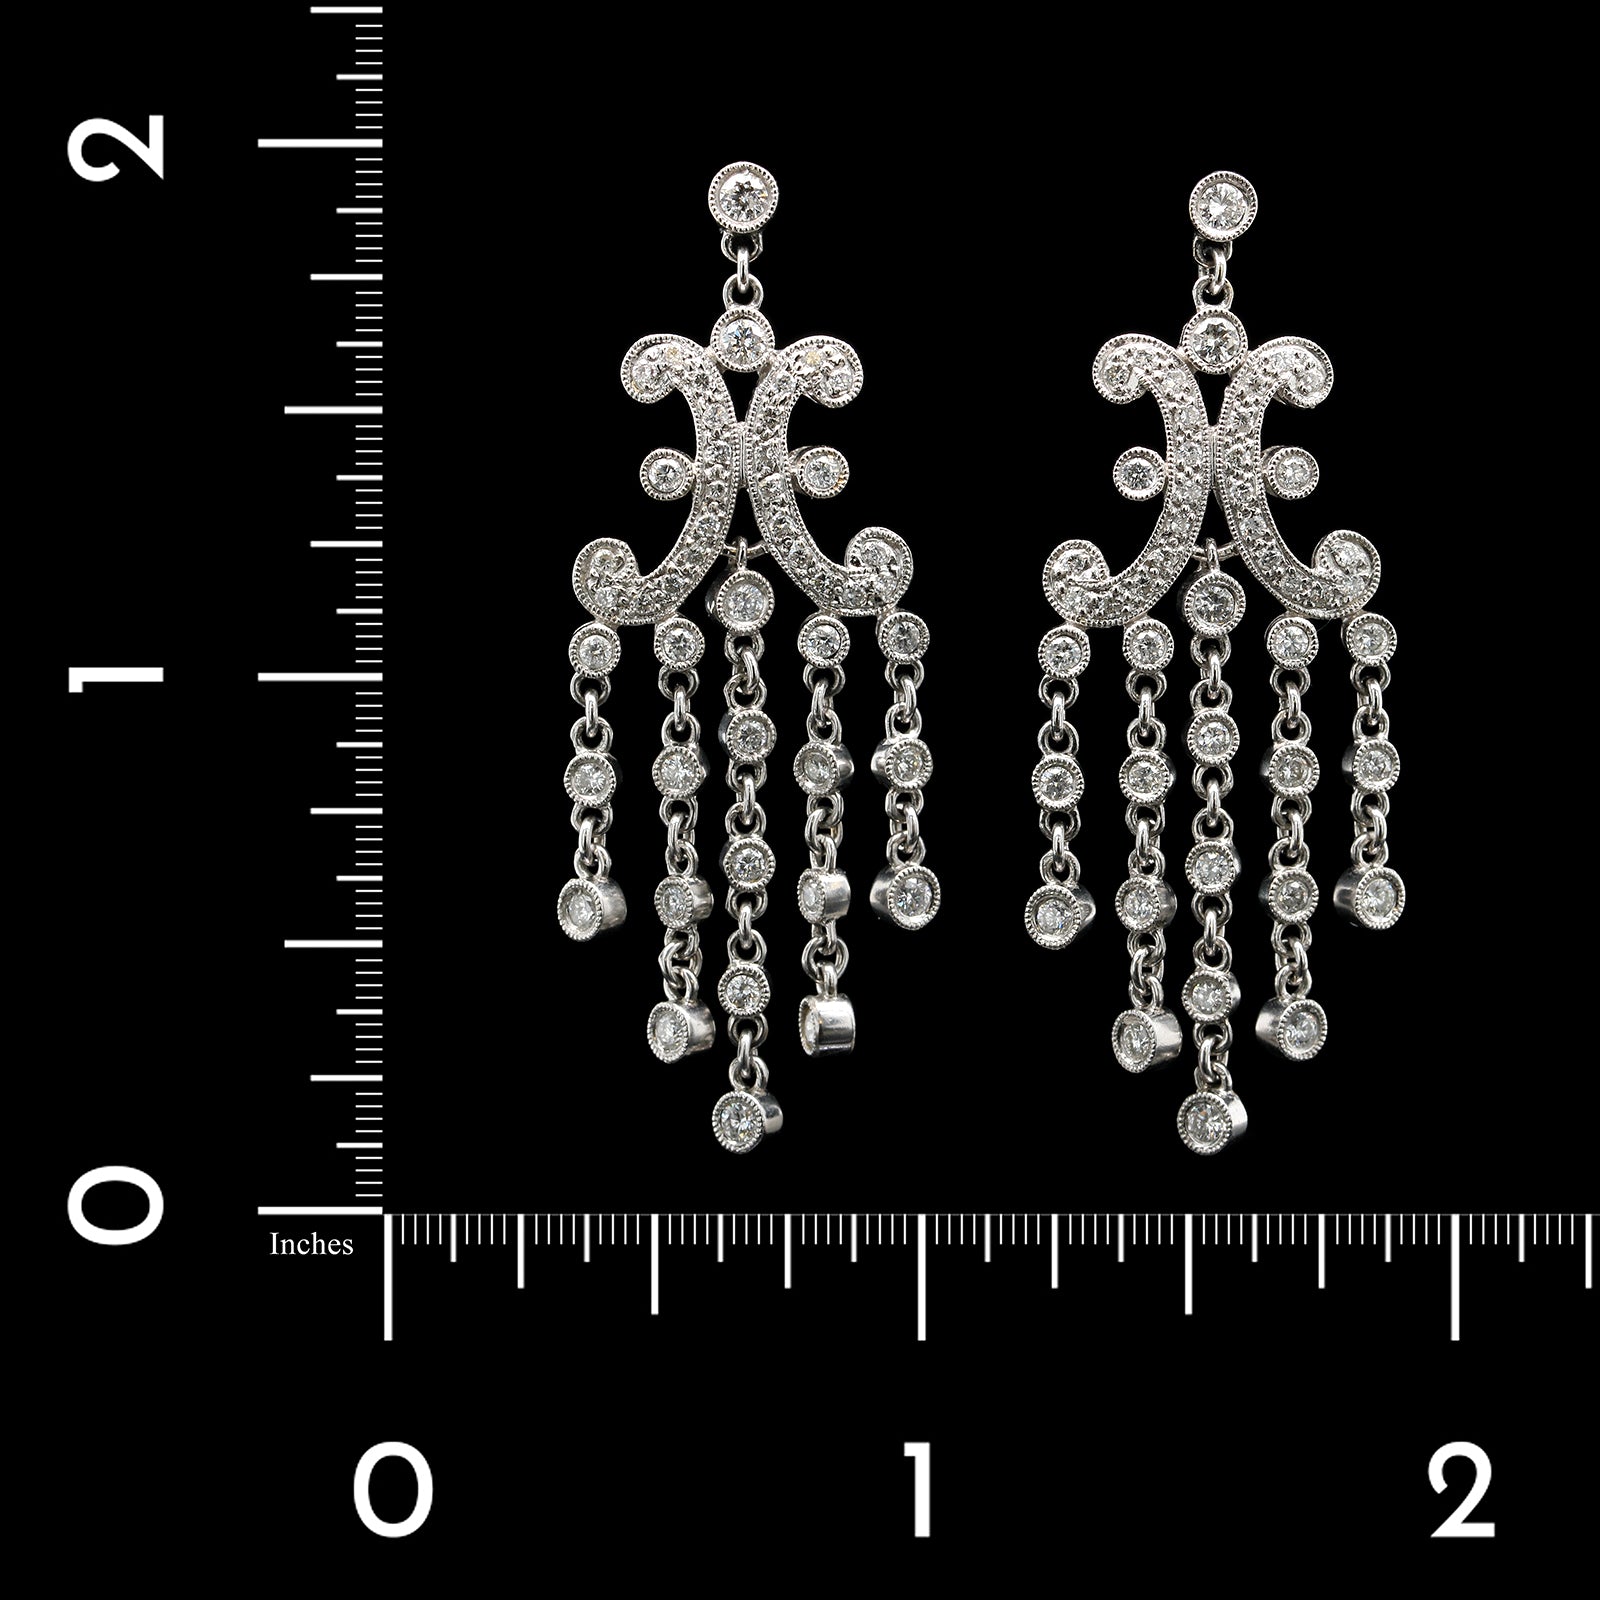 14K White Gold Estate and Diamond Fringe Earrings